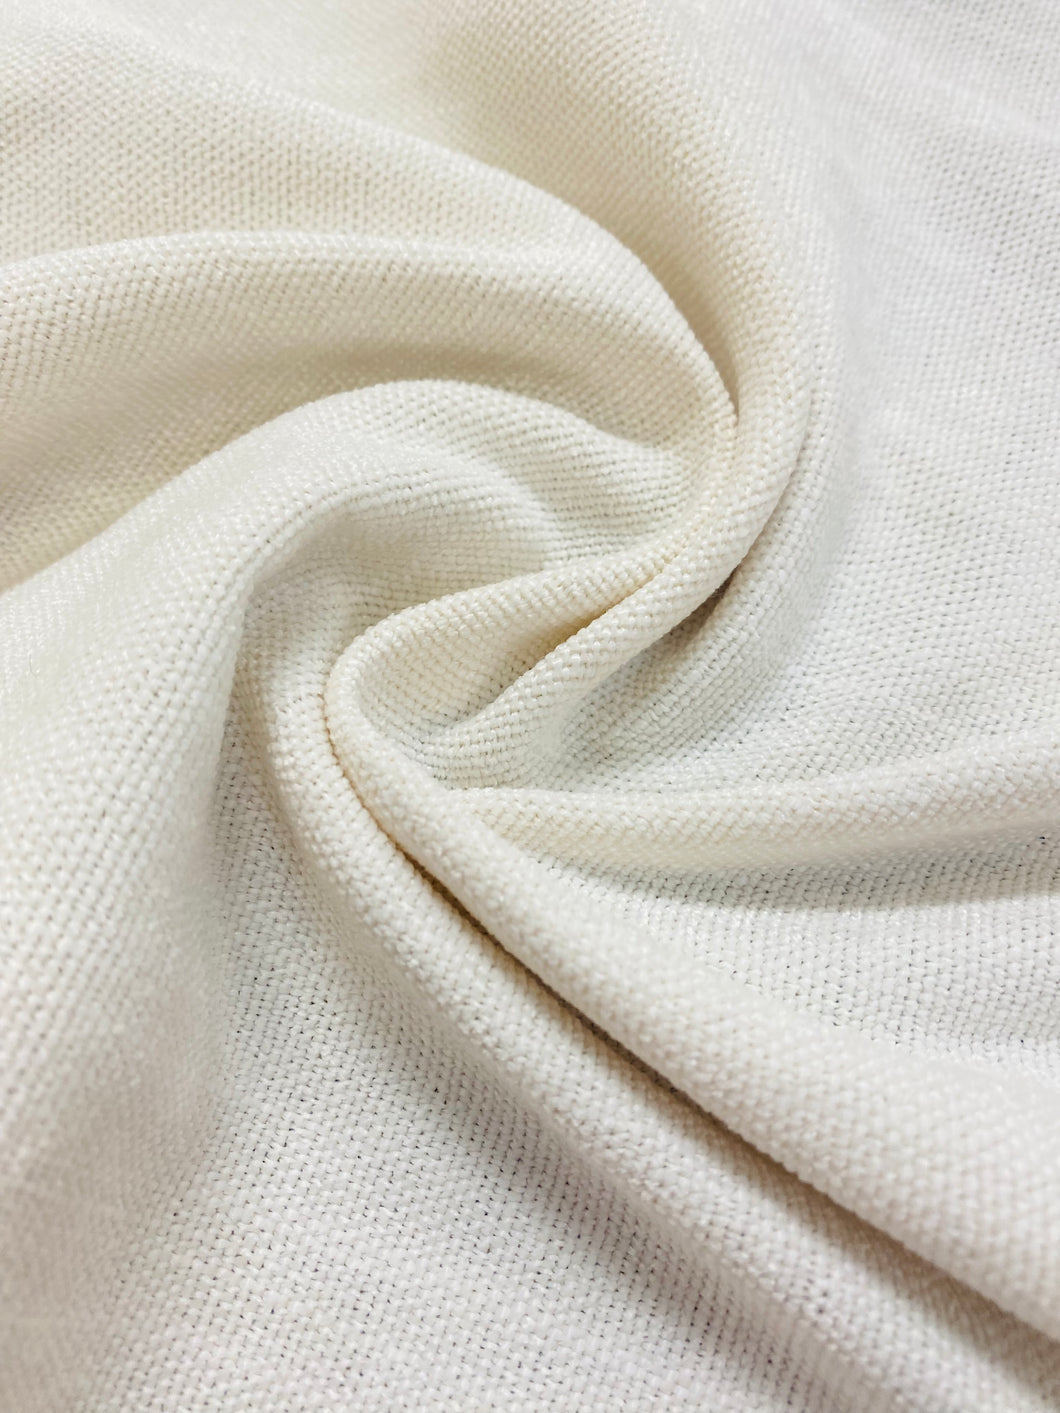 Off White Chenille Fabric, Fabric Bistro, Columbia